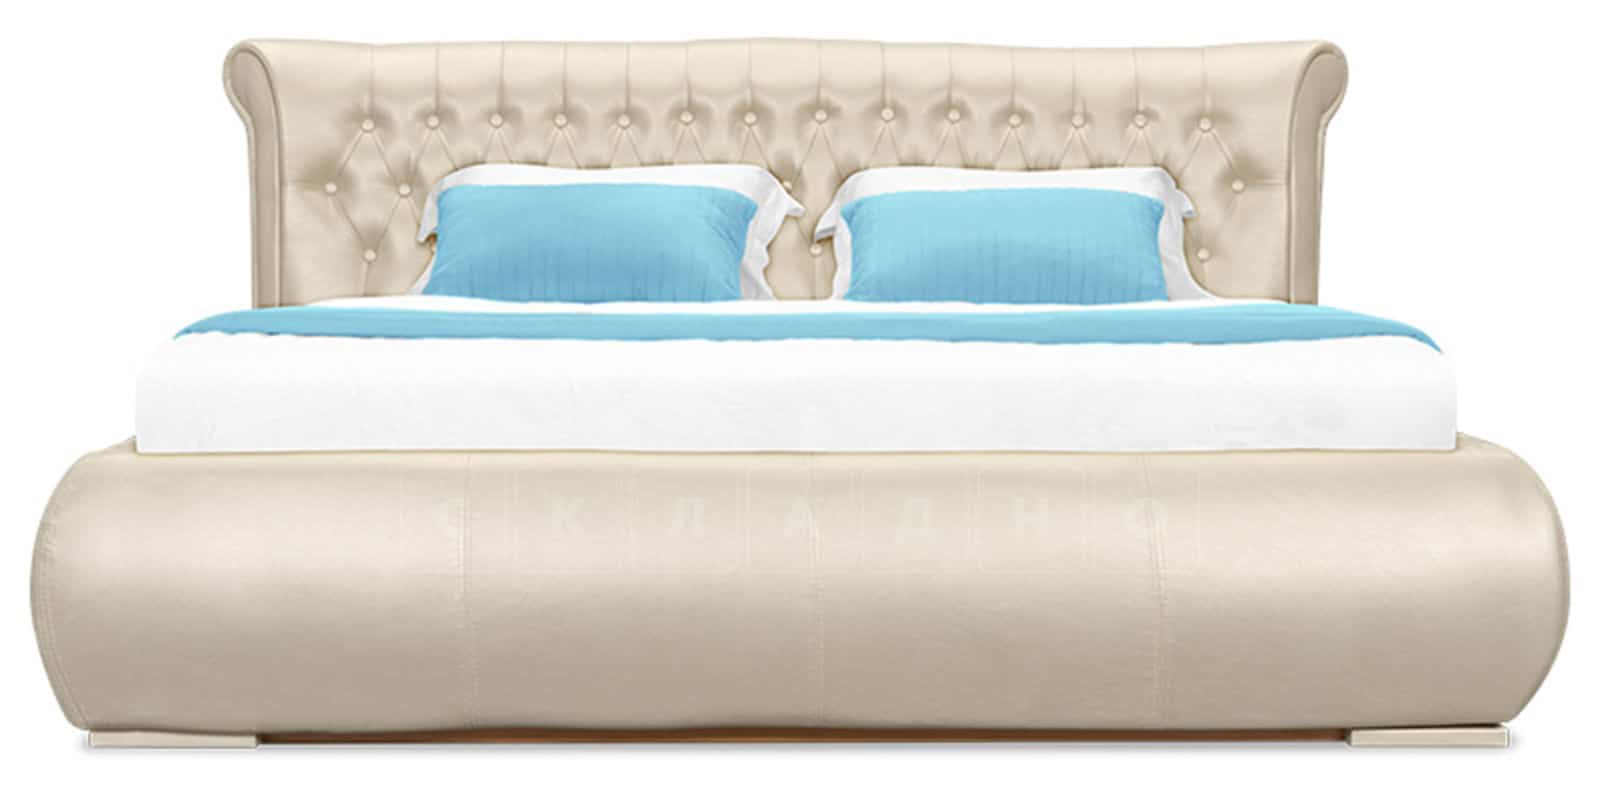 Мягкая кровать Вирджиния 160 см экокожа перламутрового цвета фото 3 | интернет-магазин Складно